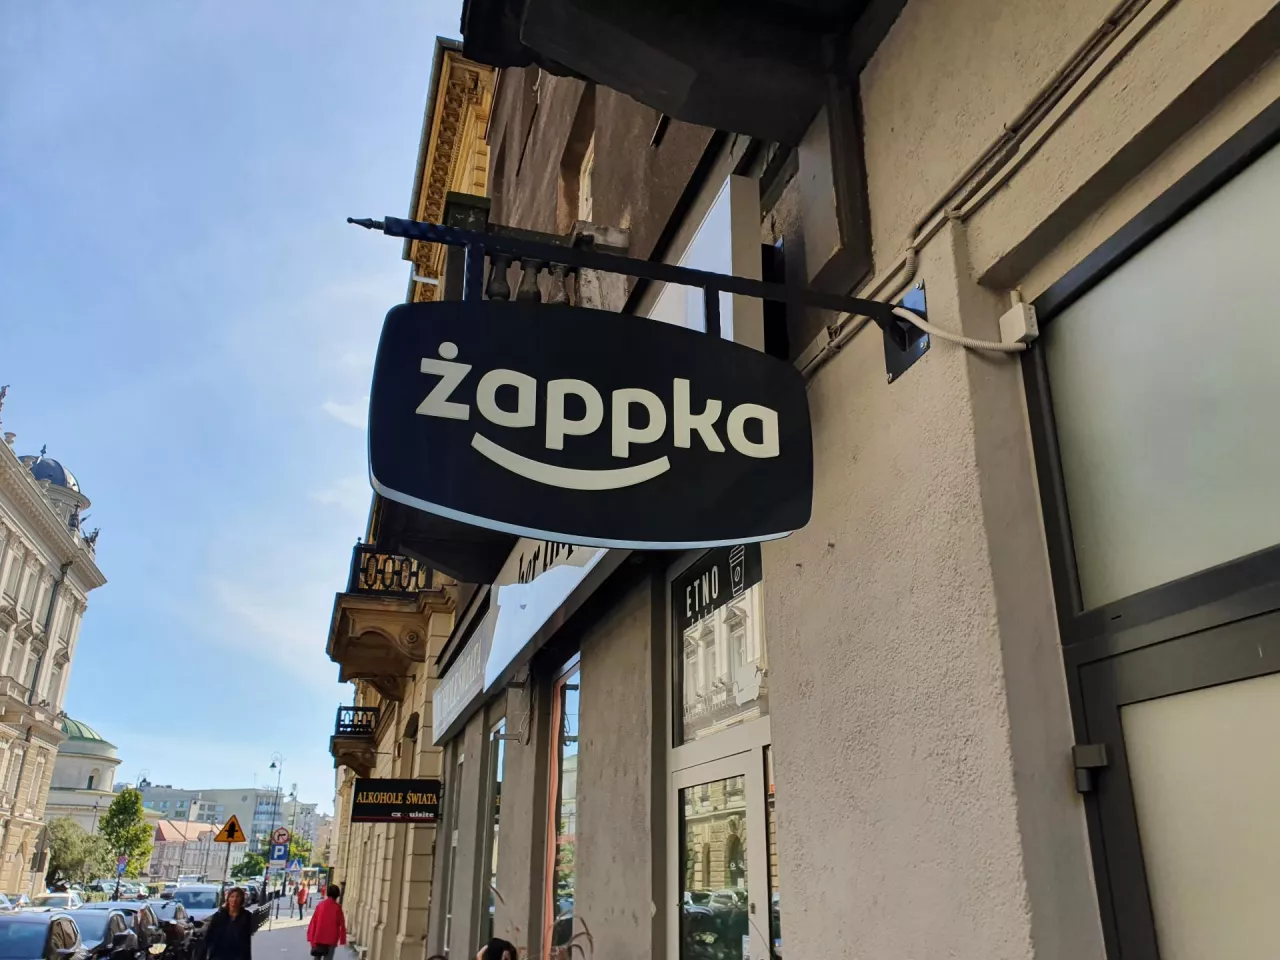 Na zdj. Żappka Store w Warszawie (fot. wiadomoscihandlowe.pl)